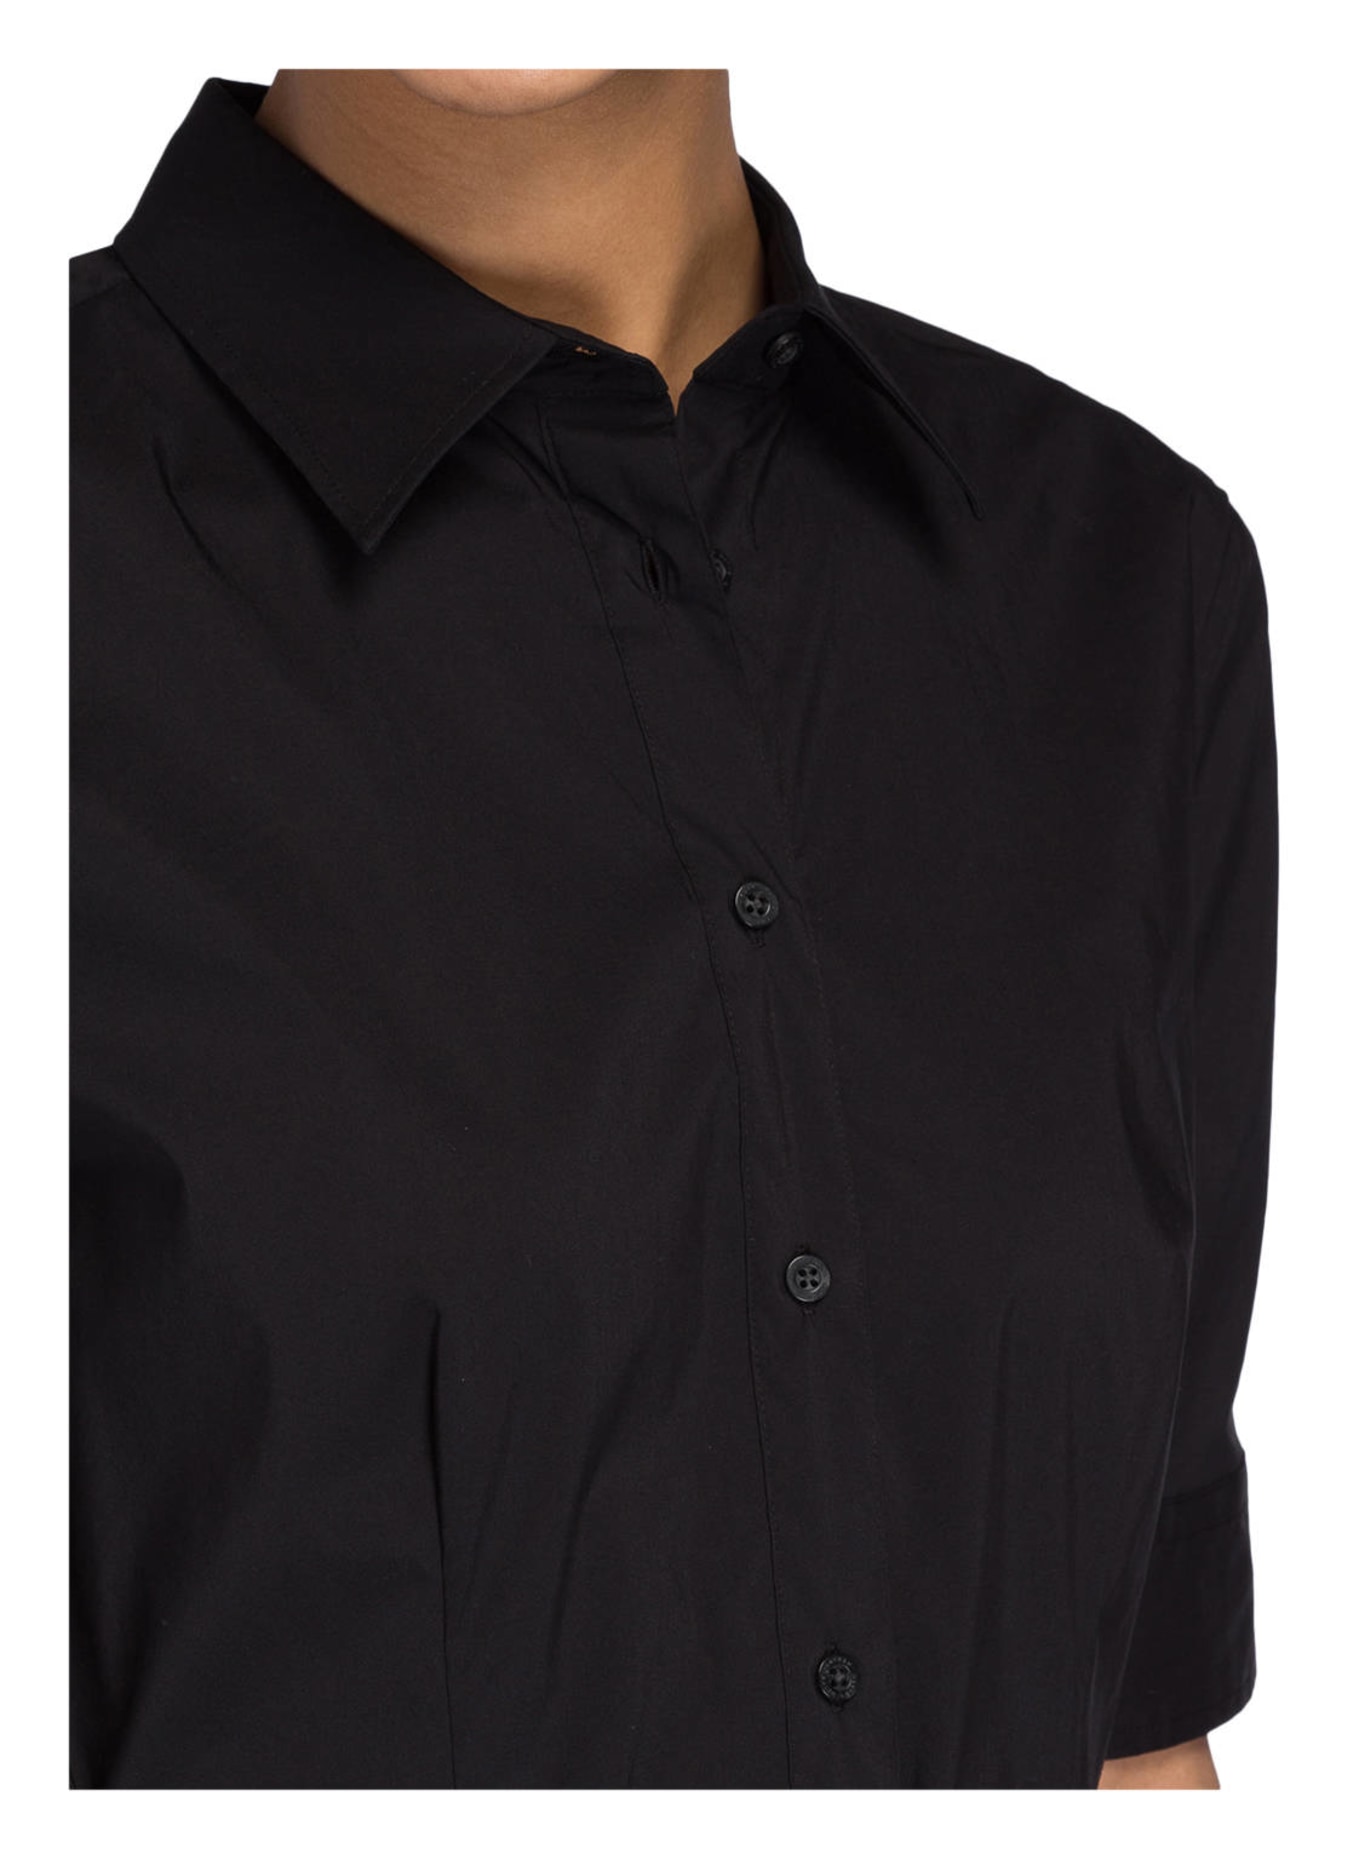 LAUREN RALPH LAUREN Shirt dress, Color: BLACK (Image 4)